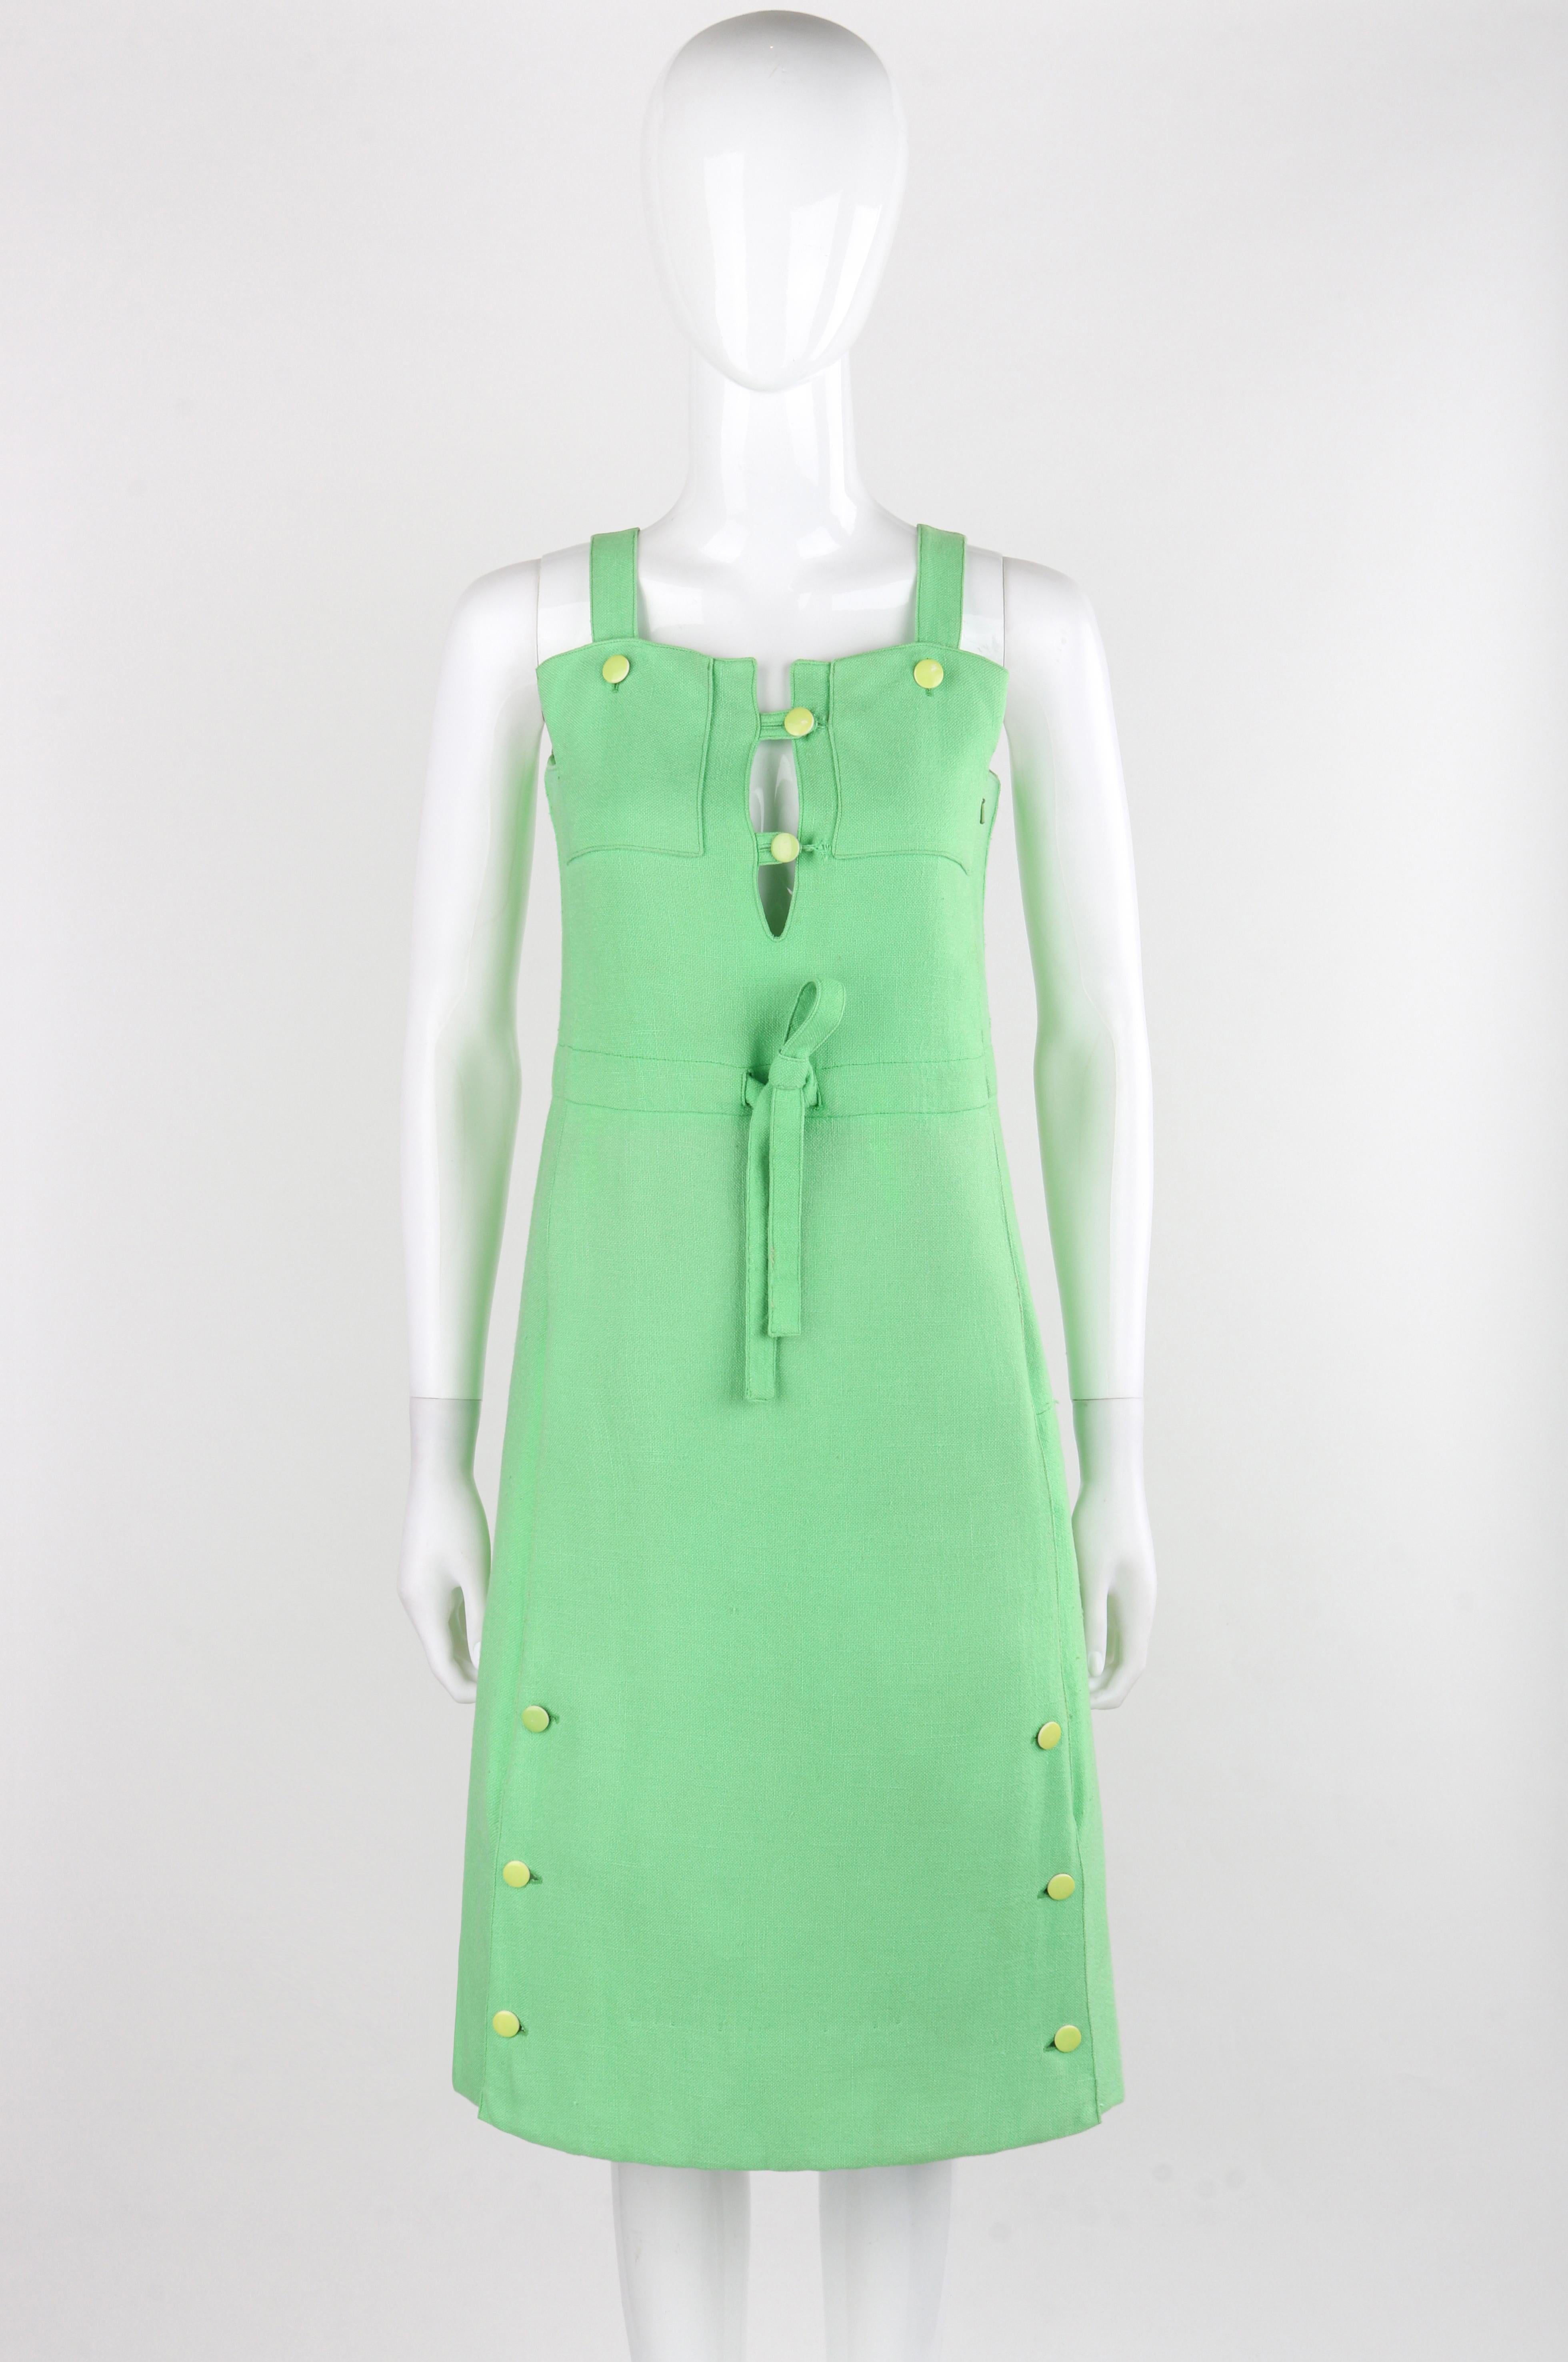 COURREGES Paris c.1960's Vtg Mint Green Tie Front Overall Midi Day Dress

Marque / Fabricant : Courreges Paris
Circa : 1960's
Designer : Andre Courreges
Style : Robe d'ensemble de jour
Couleur(s) : Vert (extérieur), Blanc (intérieur)
Doublée :